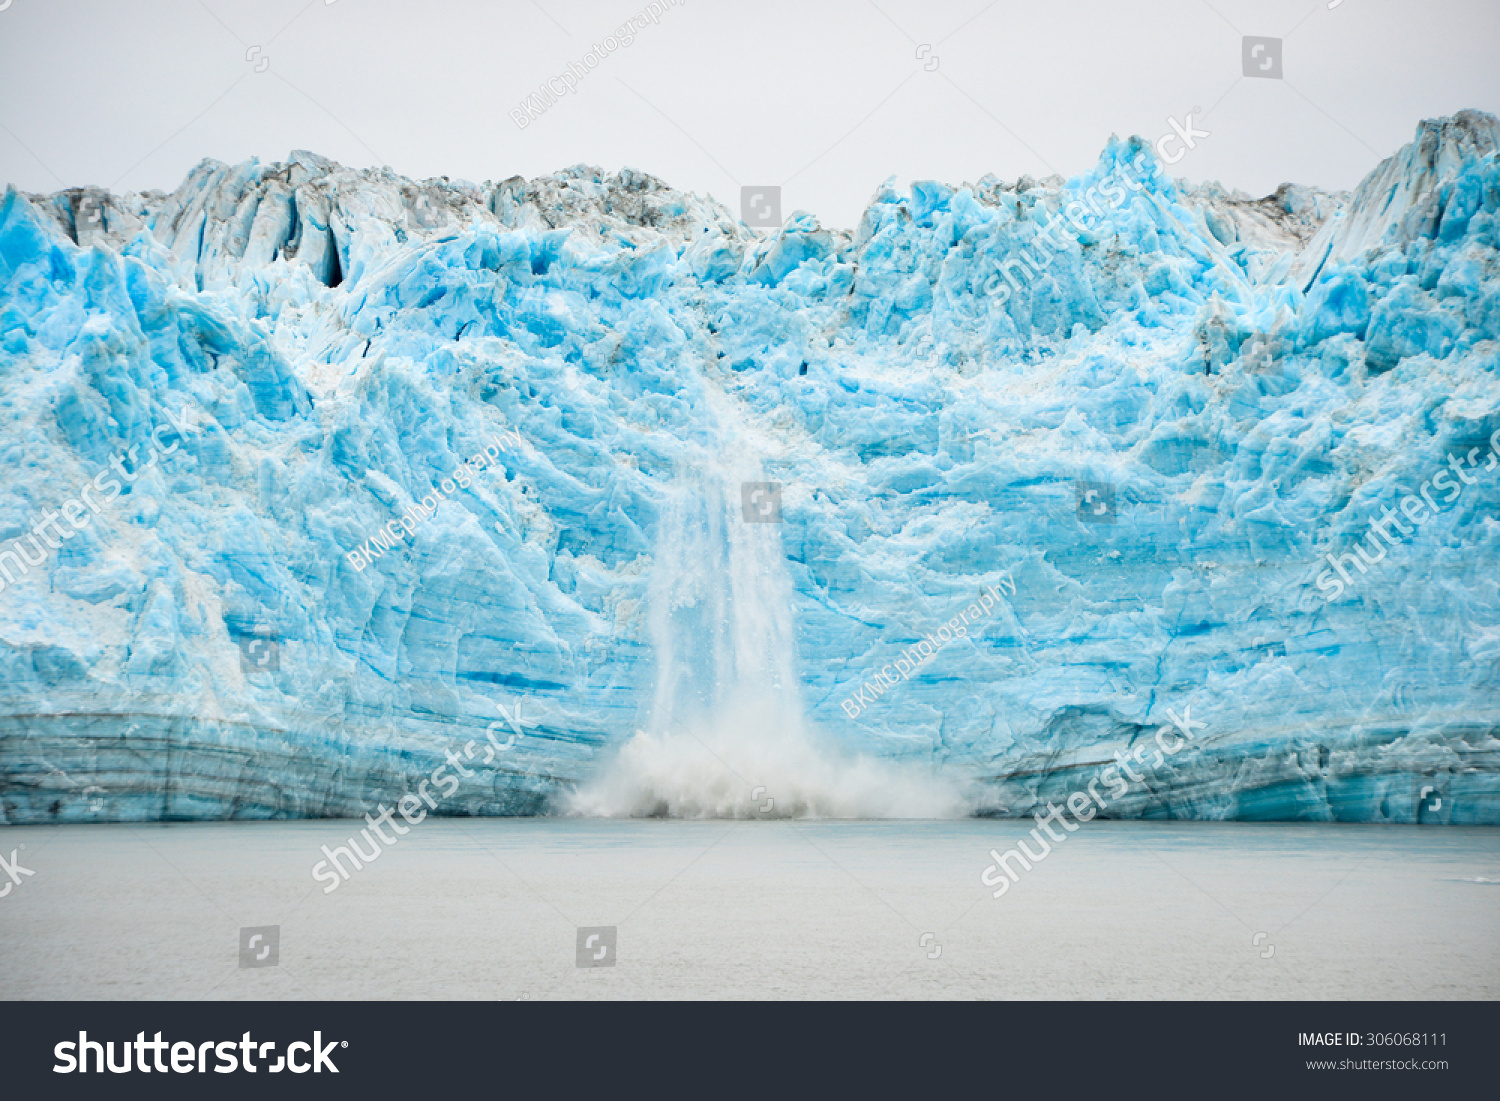 Hubbard Glacier Calving - Natural Phenomenon, soft focus #306068111